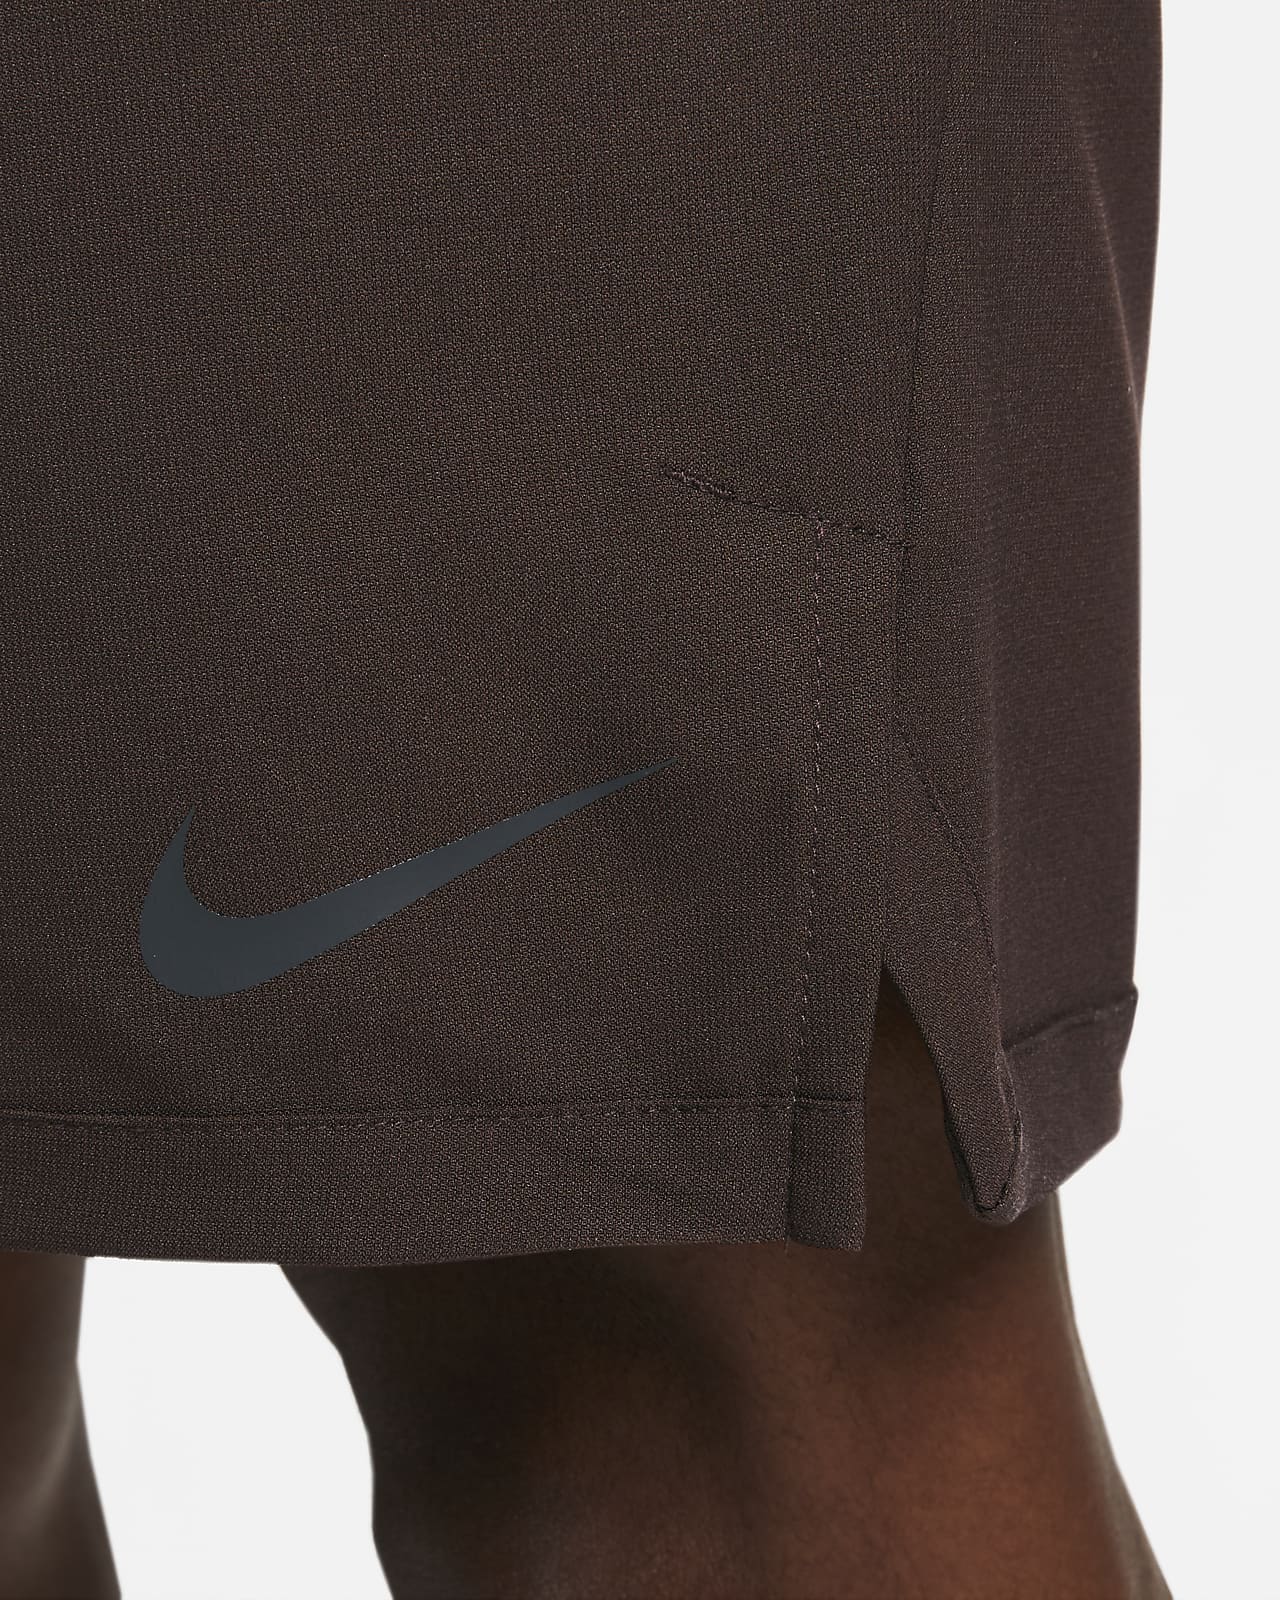 Nike Pro Flex Vent Max Men's Shorts. Nike.com